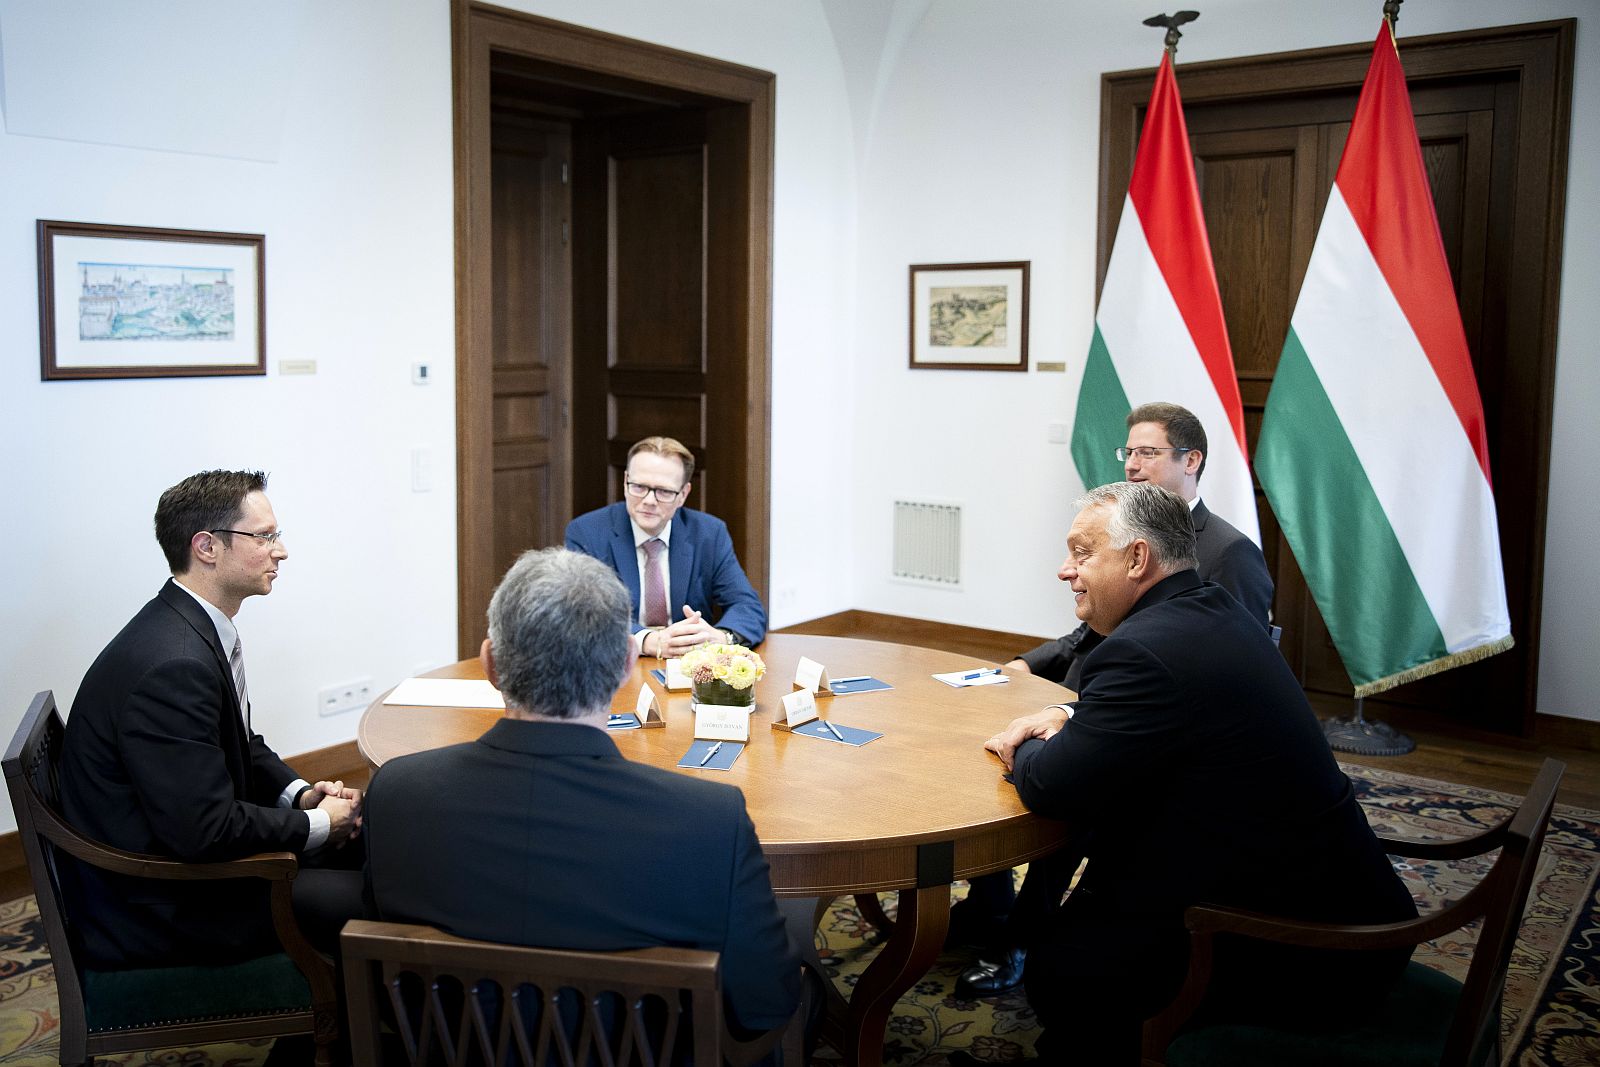 Miniszterelnöki megbeszélésen az újonnan kinevezett Fejér vármegyei főispán